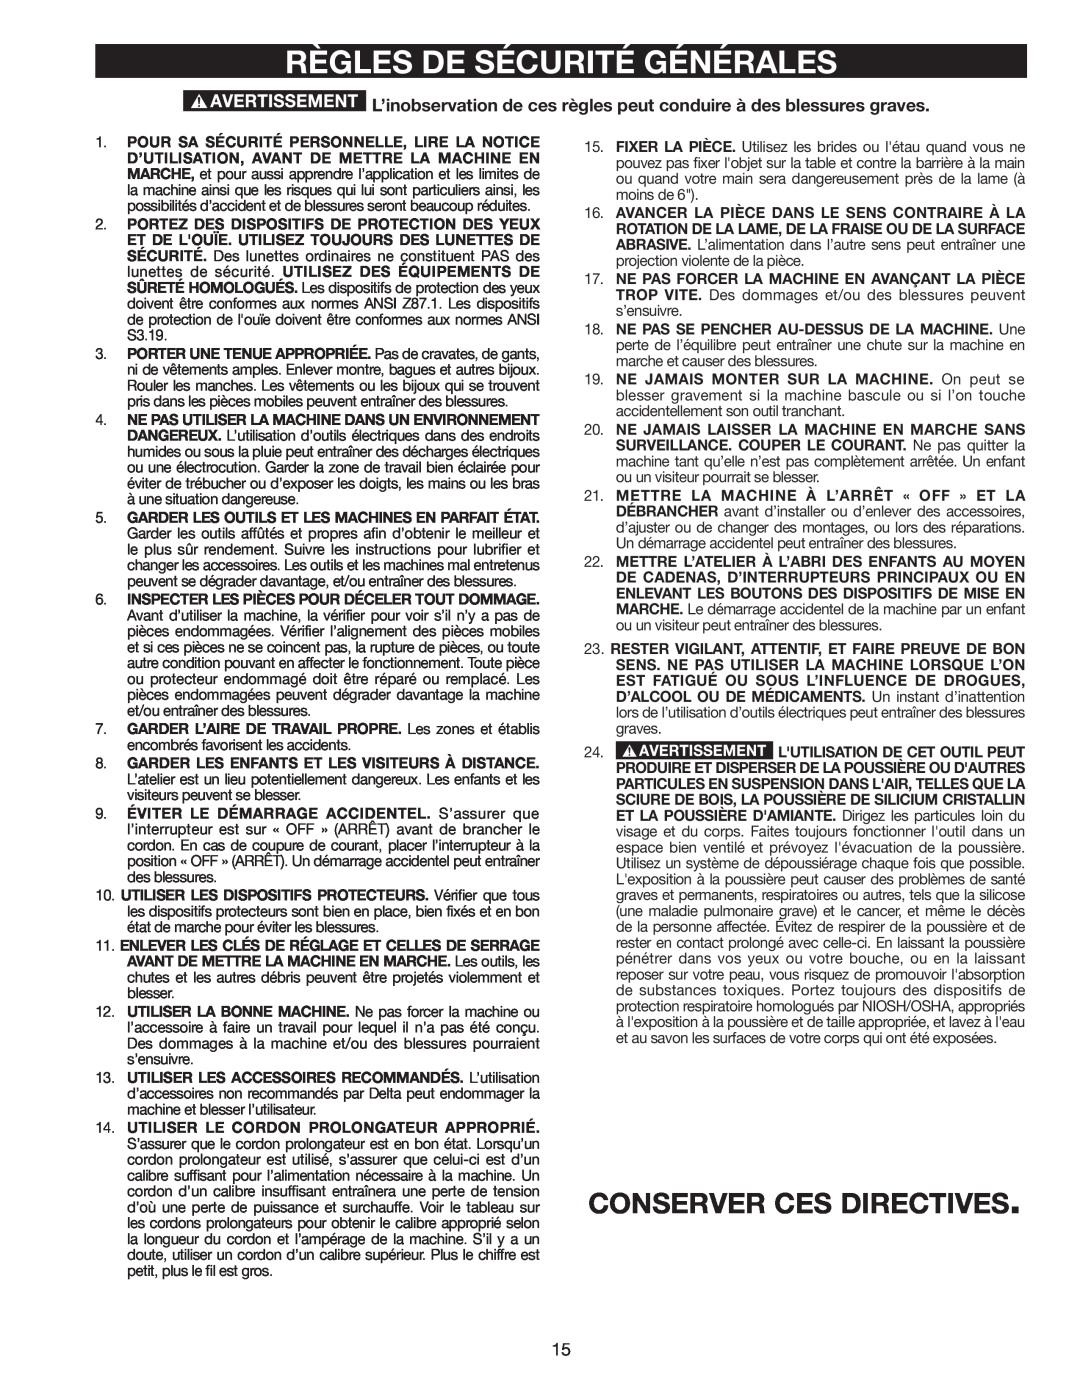 Delta AP-100 instruction manual Règles De Sécurité Générales, Conserver Ces Directives 